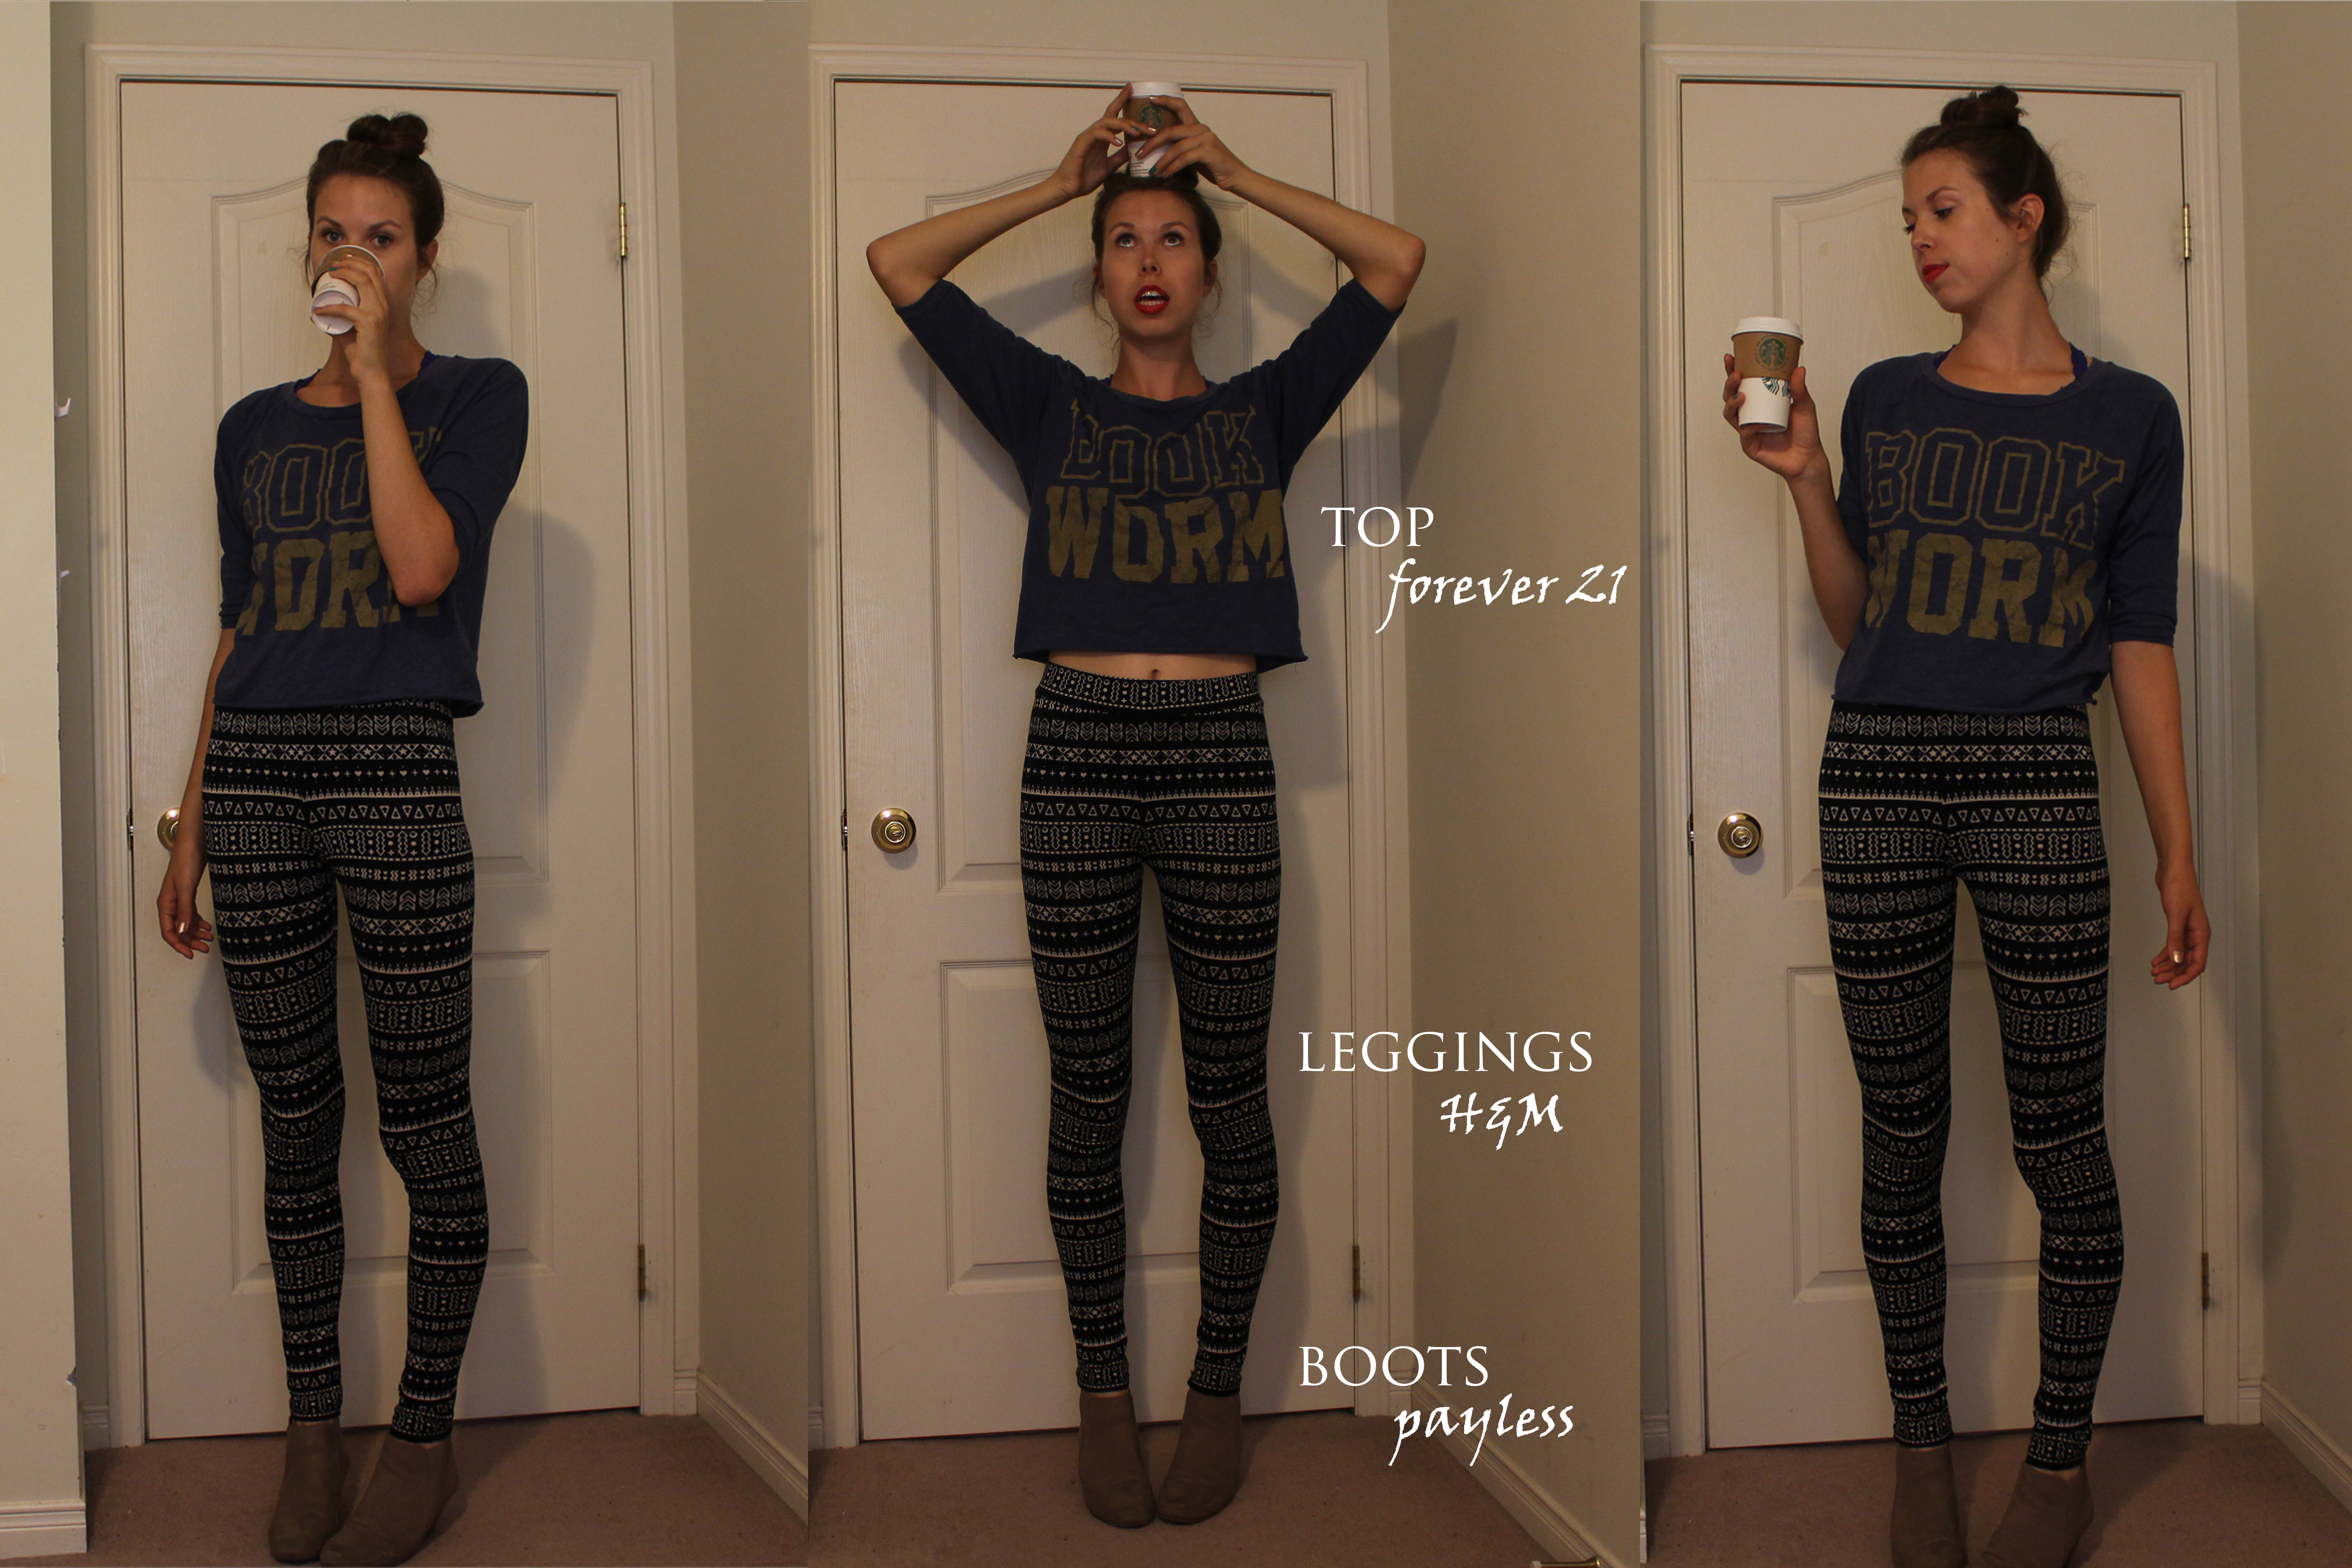 How to Wear Printed Leggings